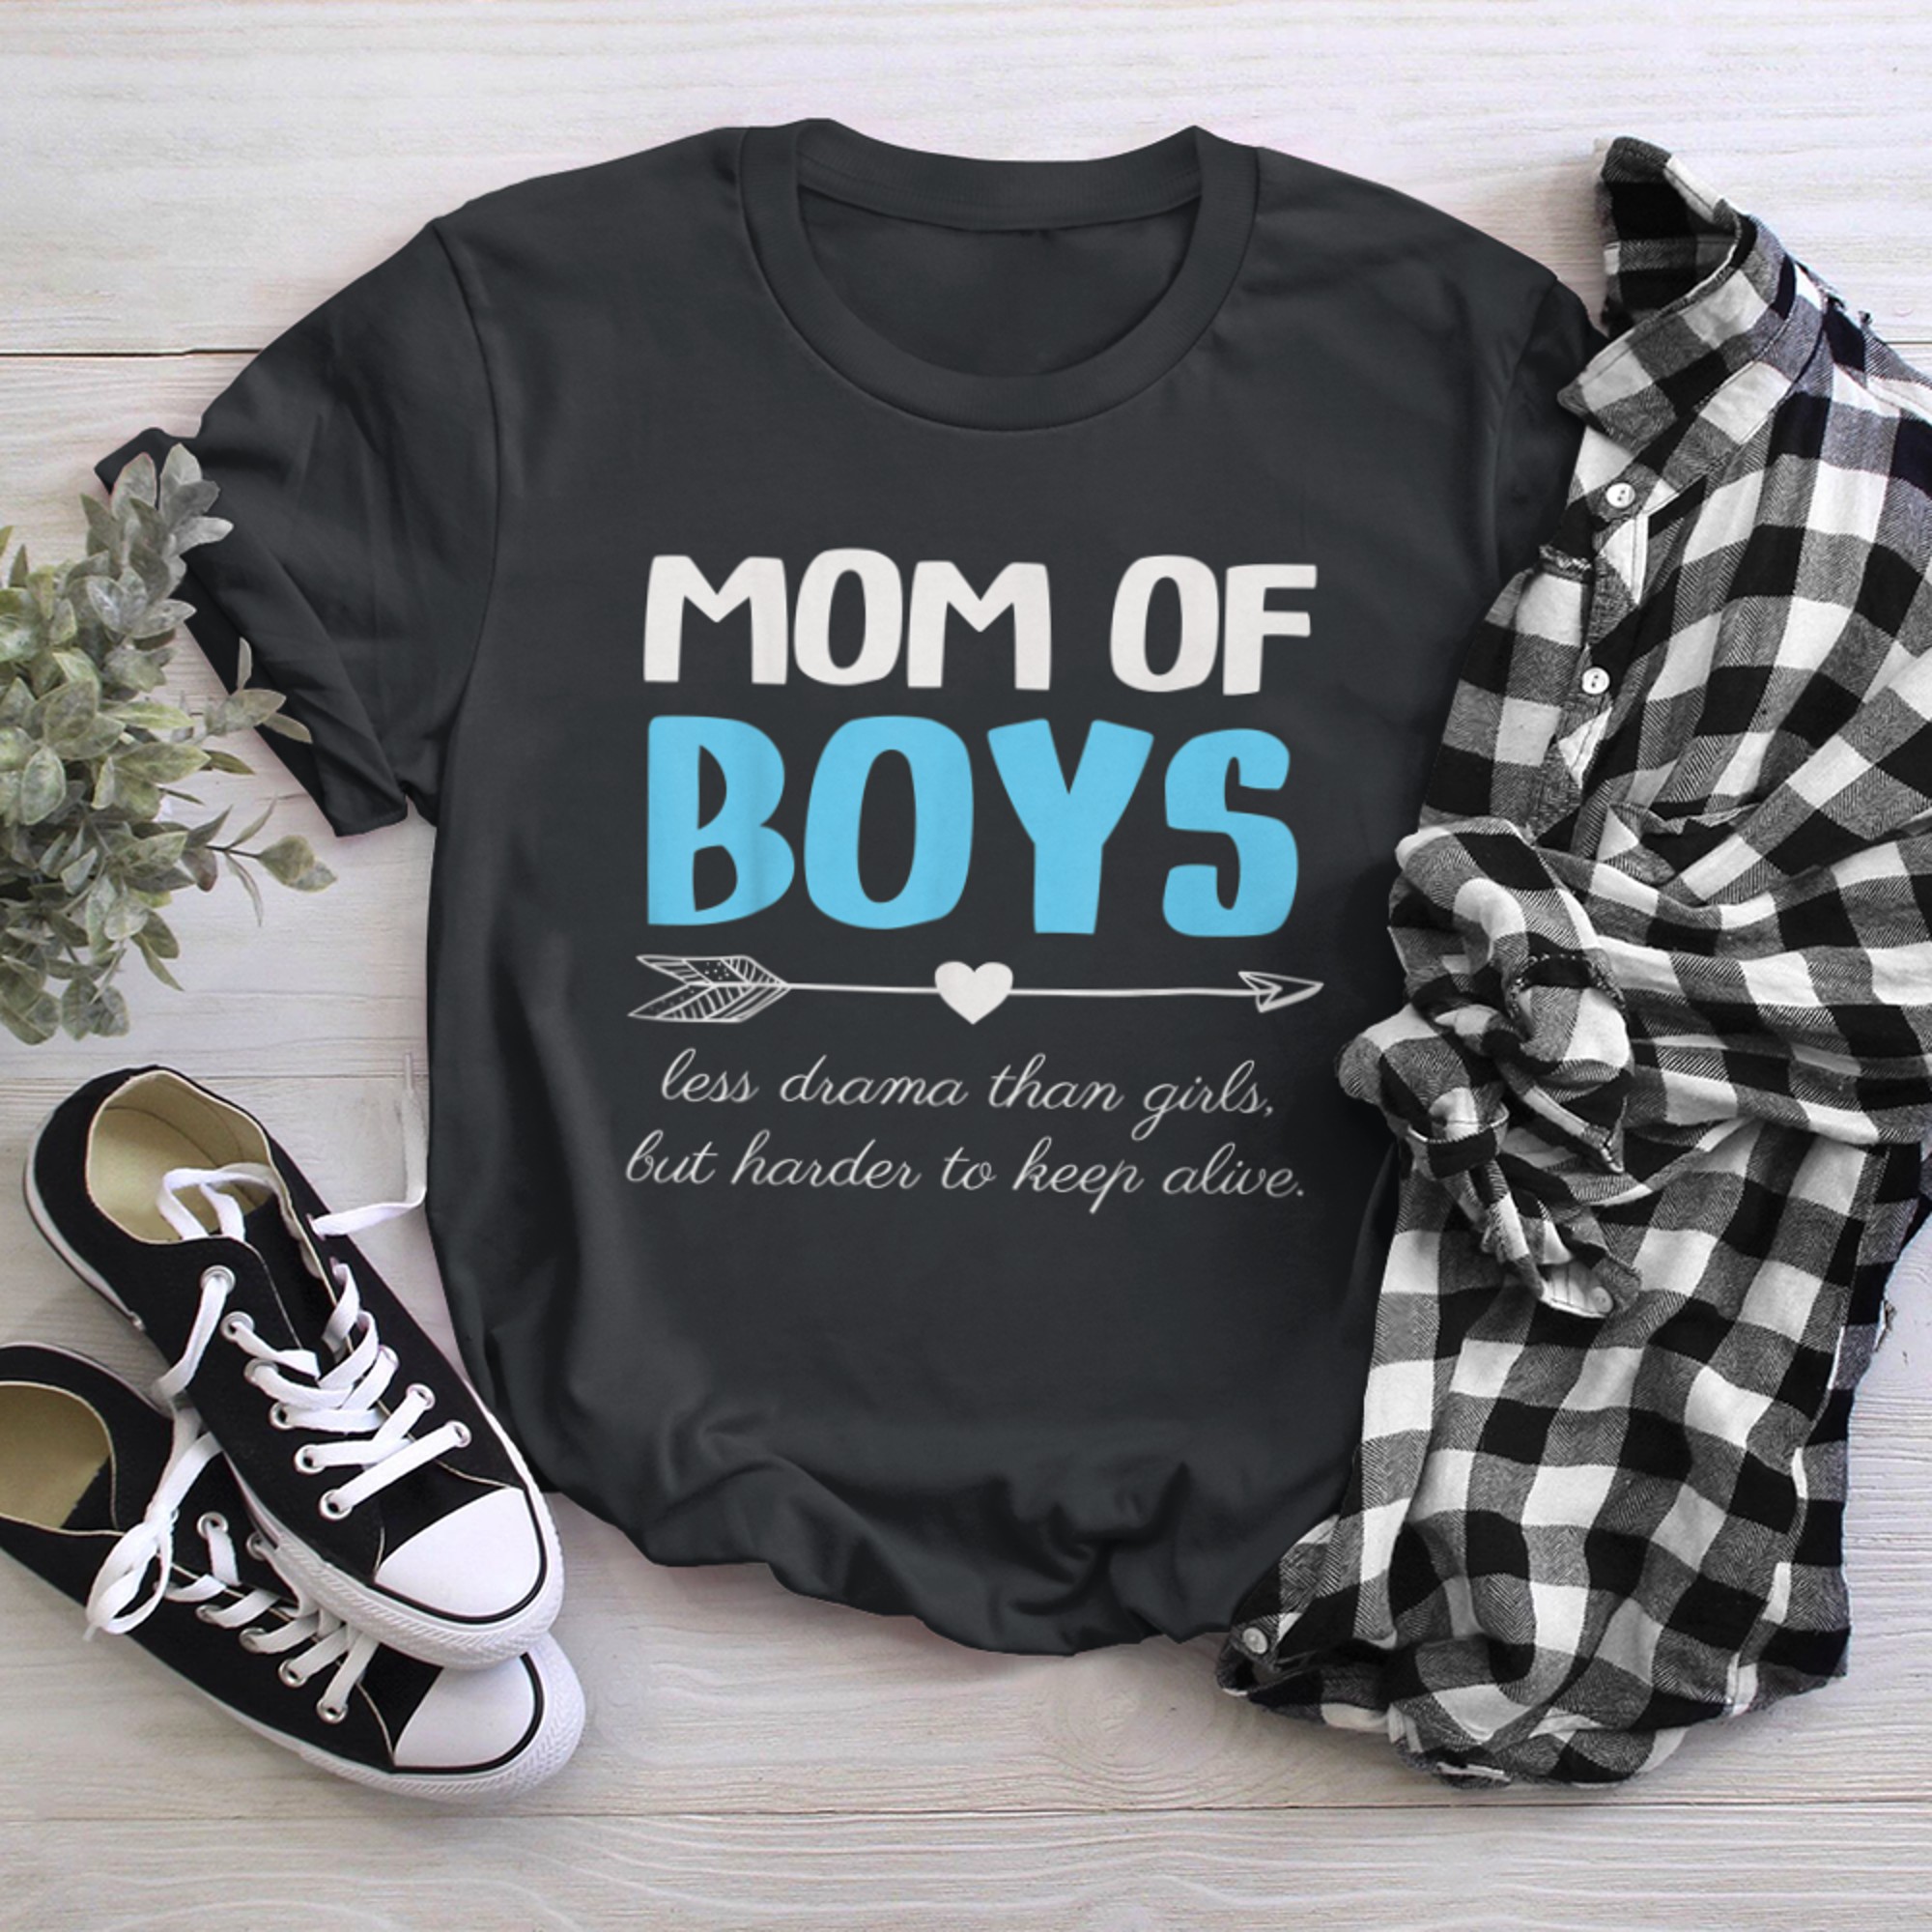 Mom Of Less Drama Than t-shirt black